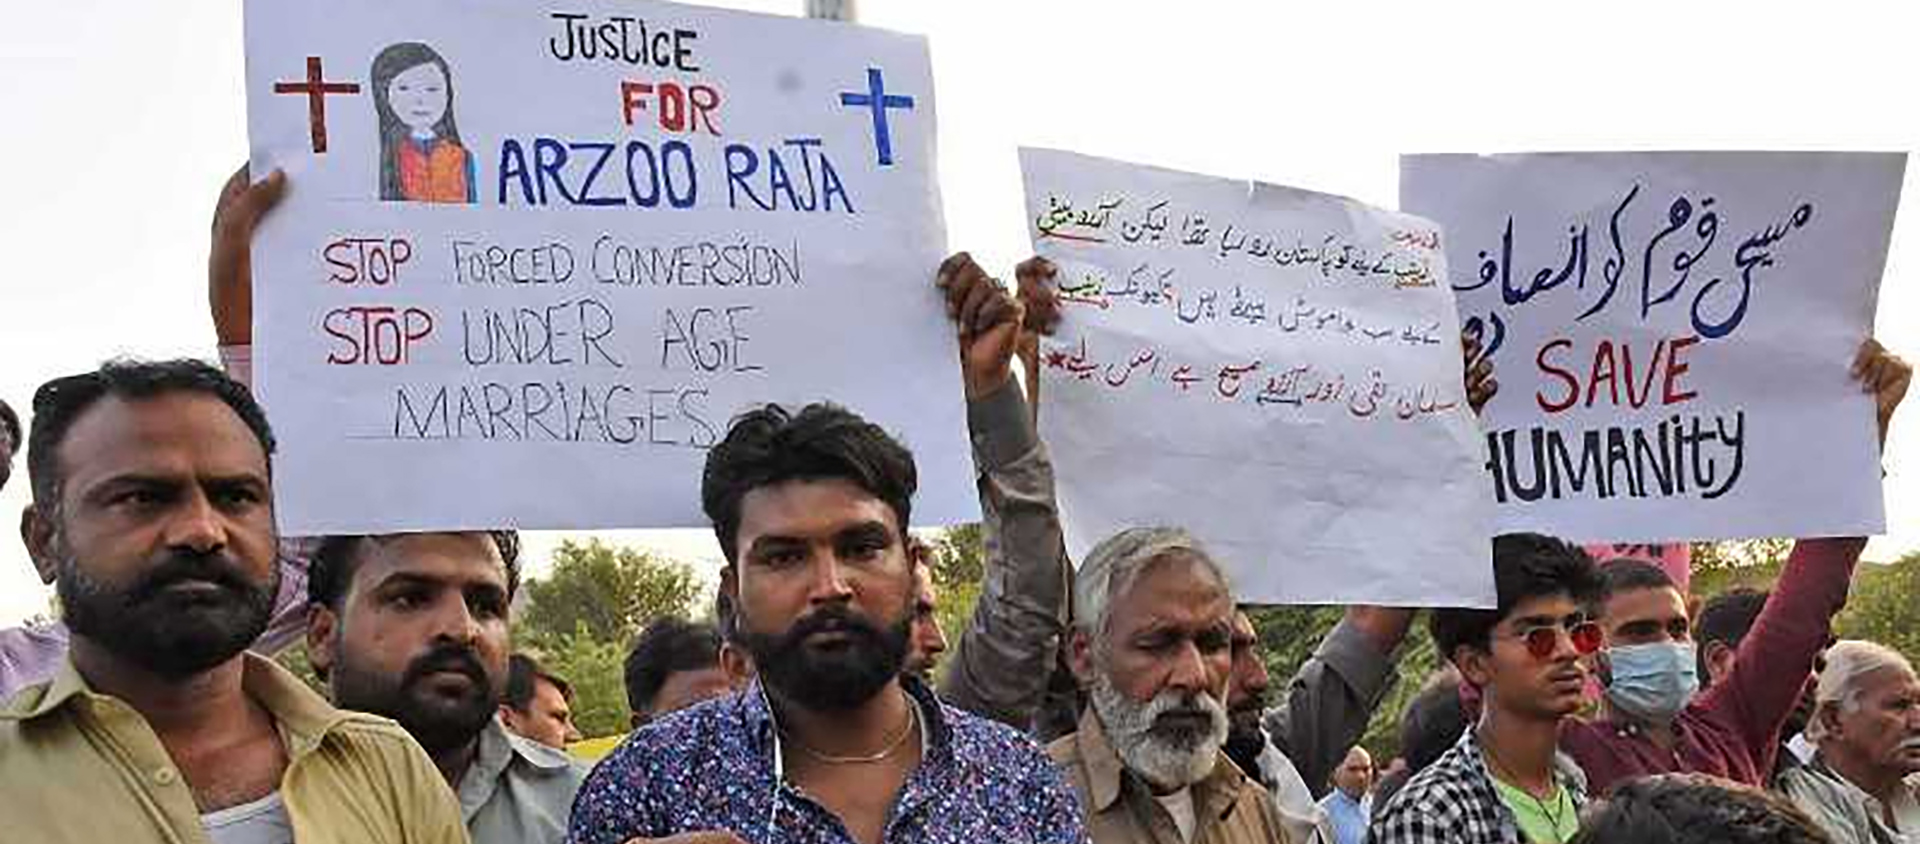 L'enlèvement, la conversion et le mariage forcés de Arzoo Marja ont eu une large résonance sociale et politique au Pakistan. Ici une manifestation de soutien en novembre 2020 | © Samaa TV